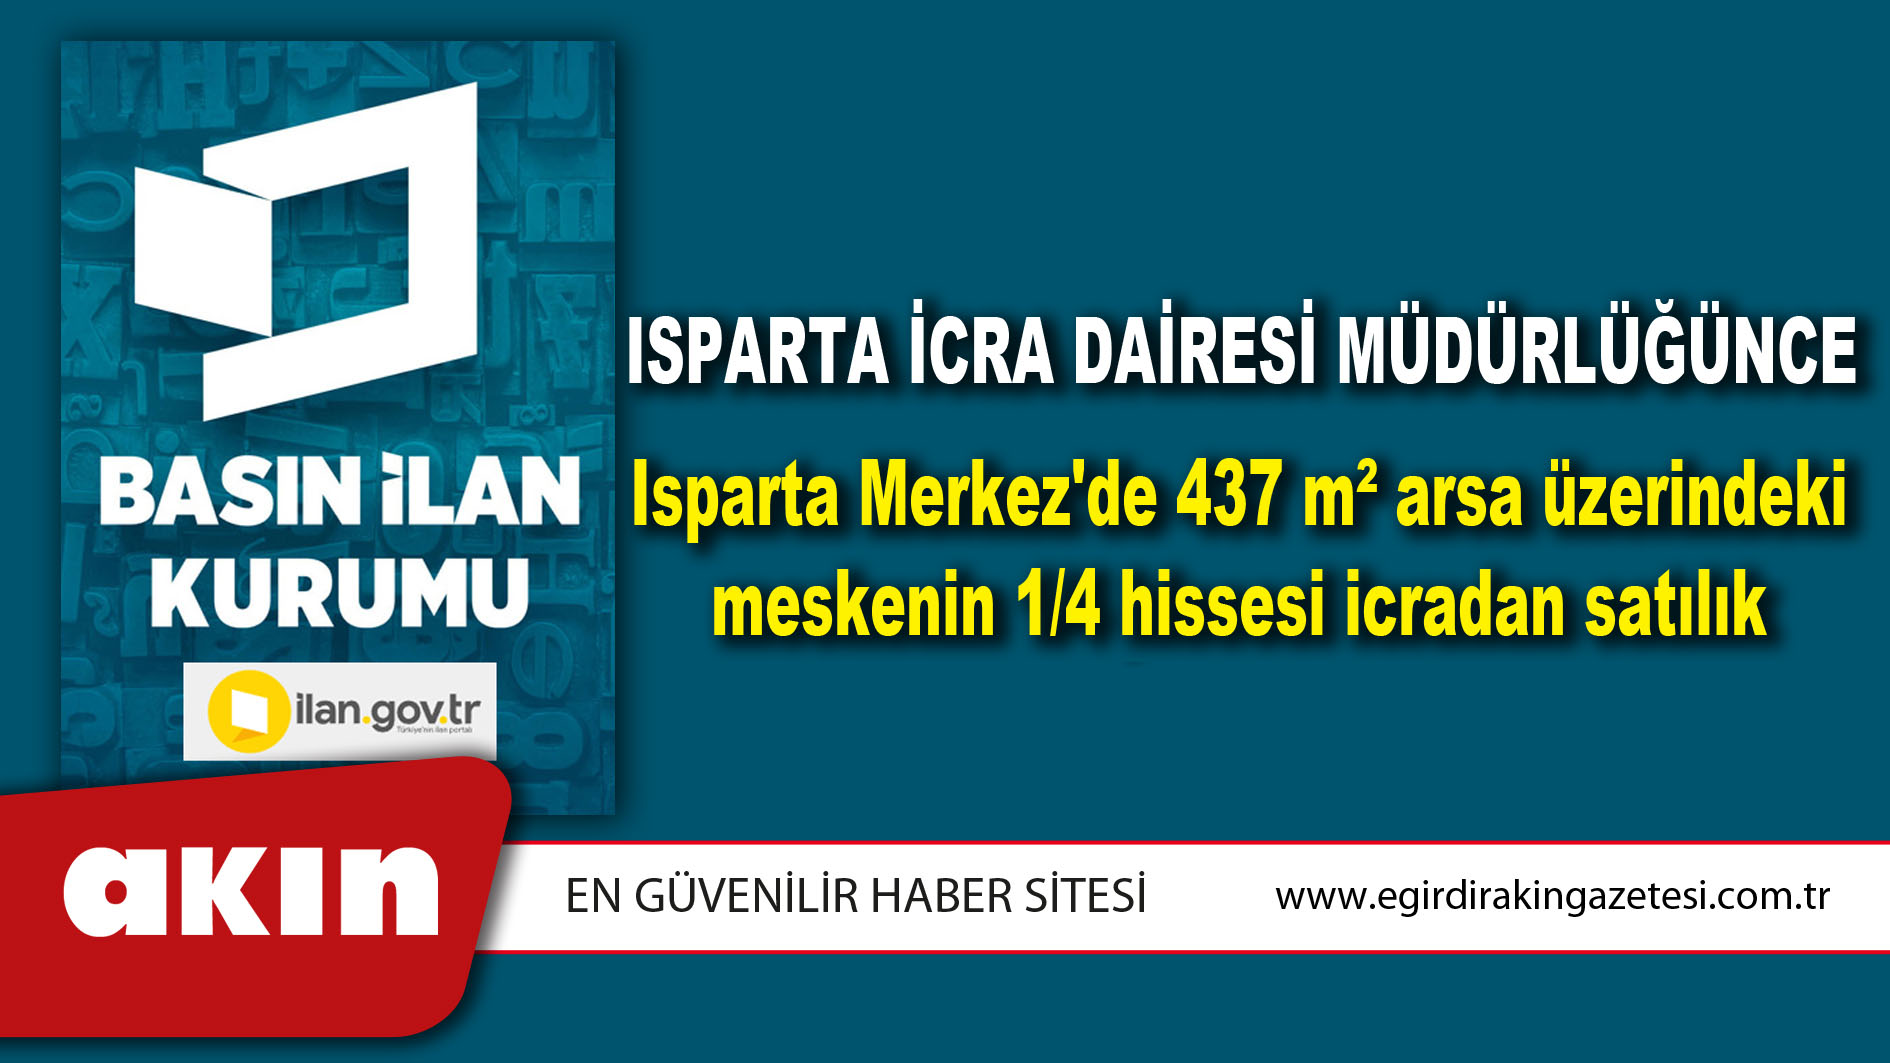 Isparta İcra Dairesi Müdürlüğünce Isparta Merkez'de 437 m² arsa üzerindeki meskenin 1/4 hissesi icradan satılık